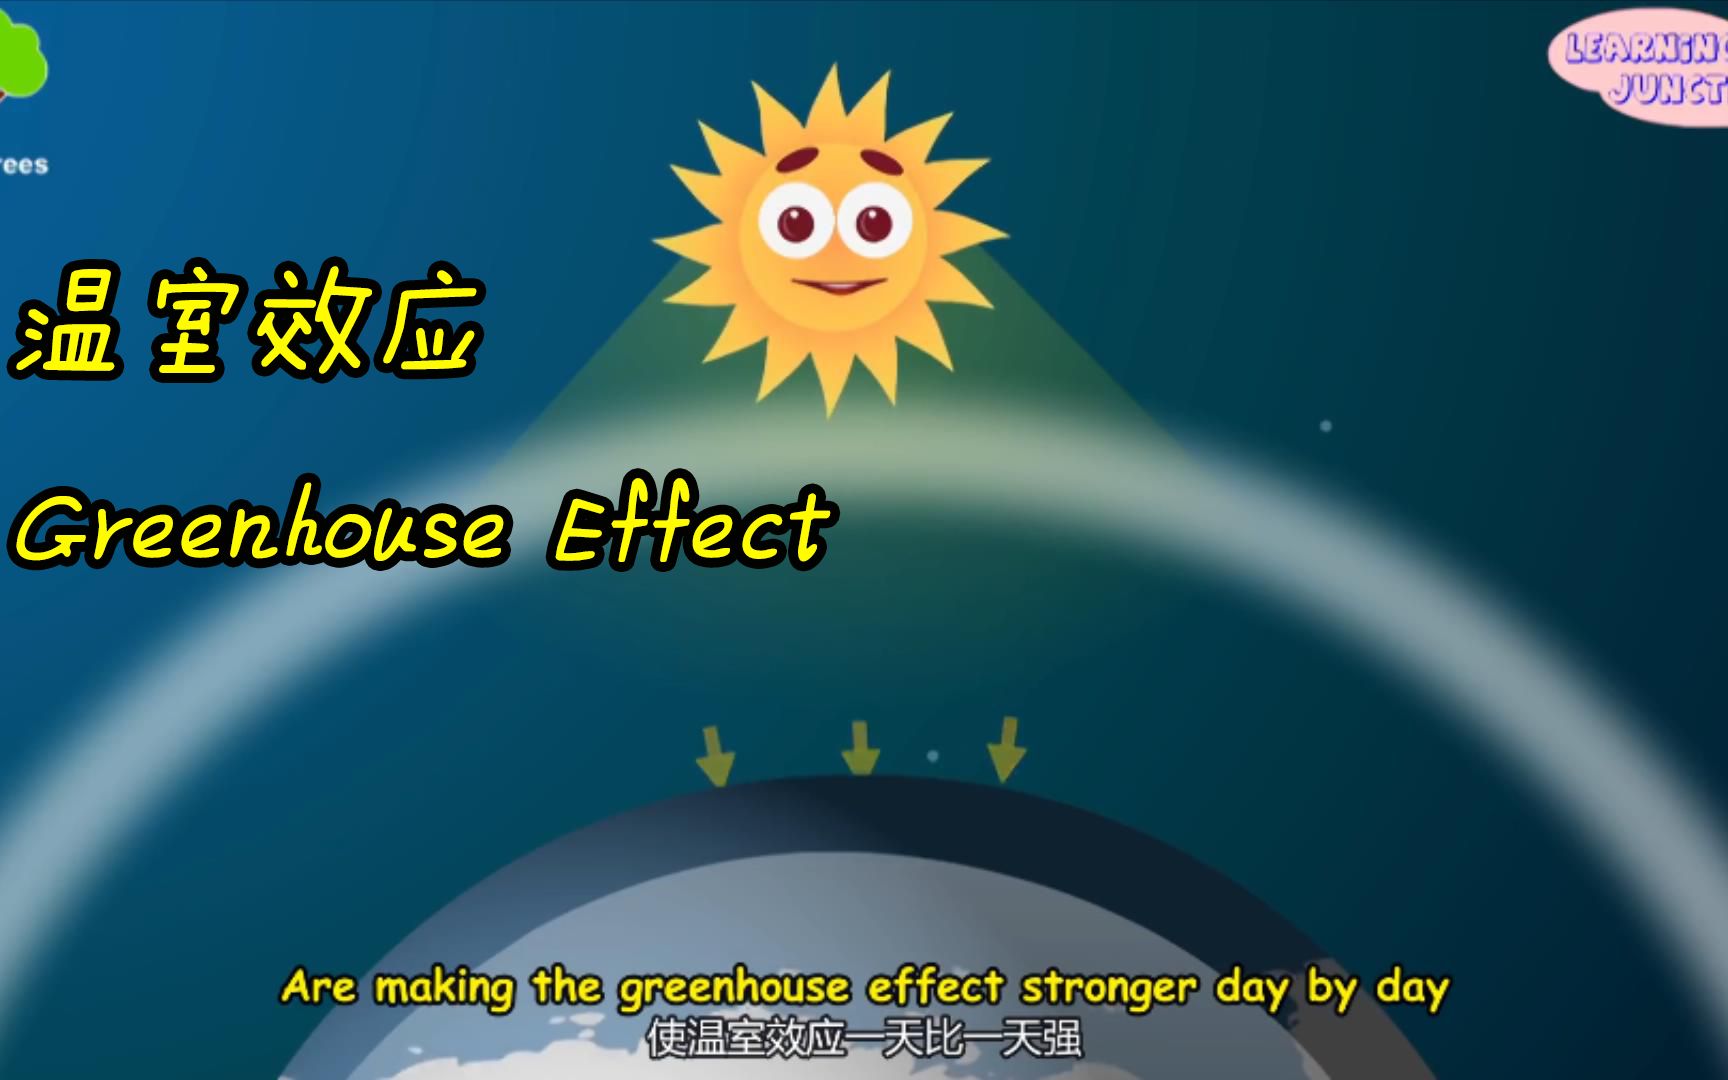 全球变暖 温室效应有害？什么是温室效应？Greenhouse Effect